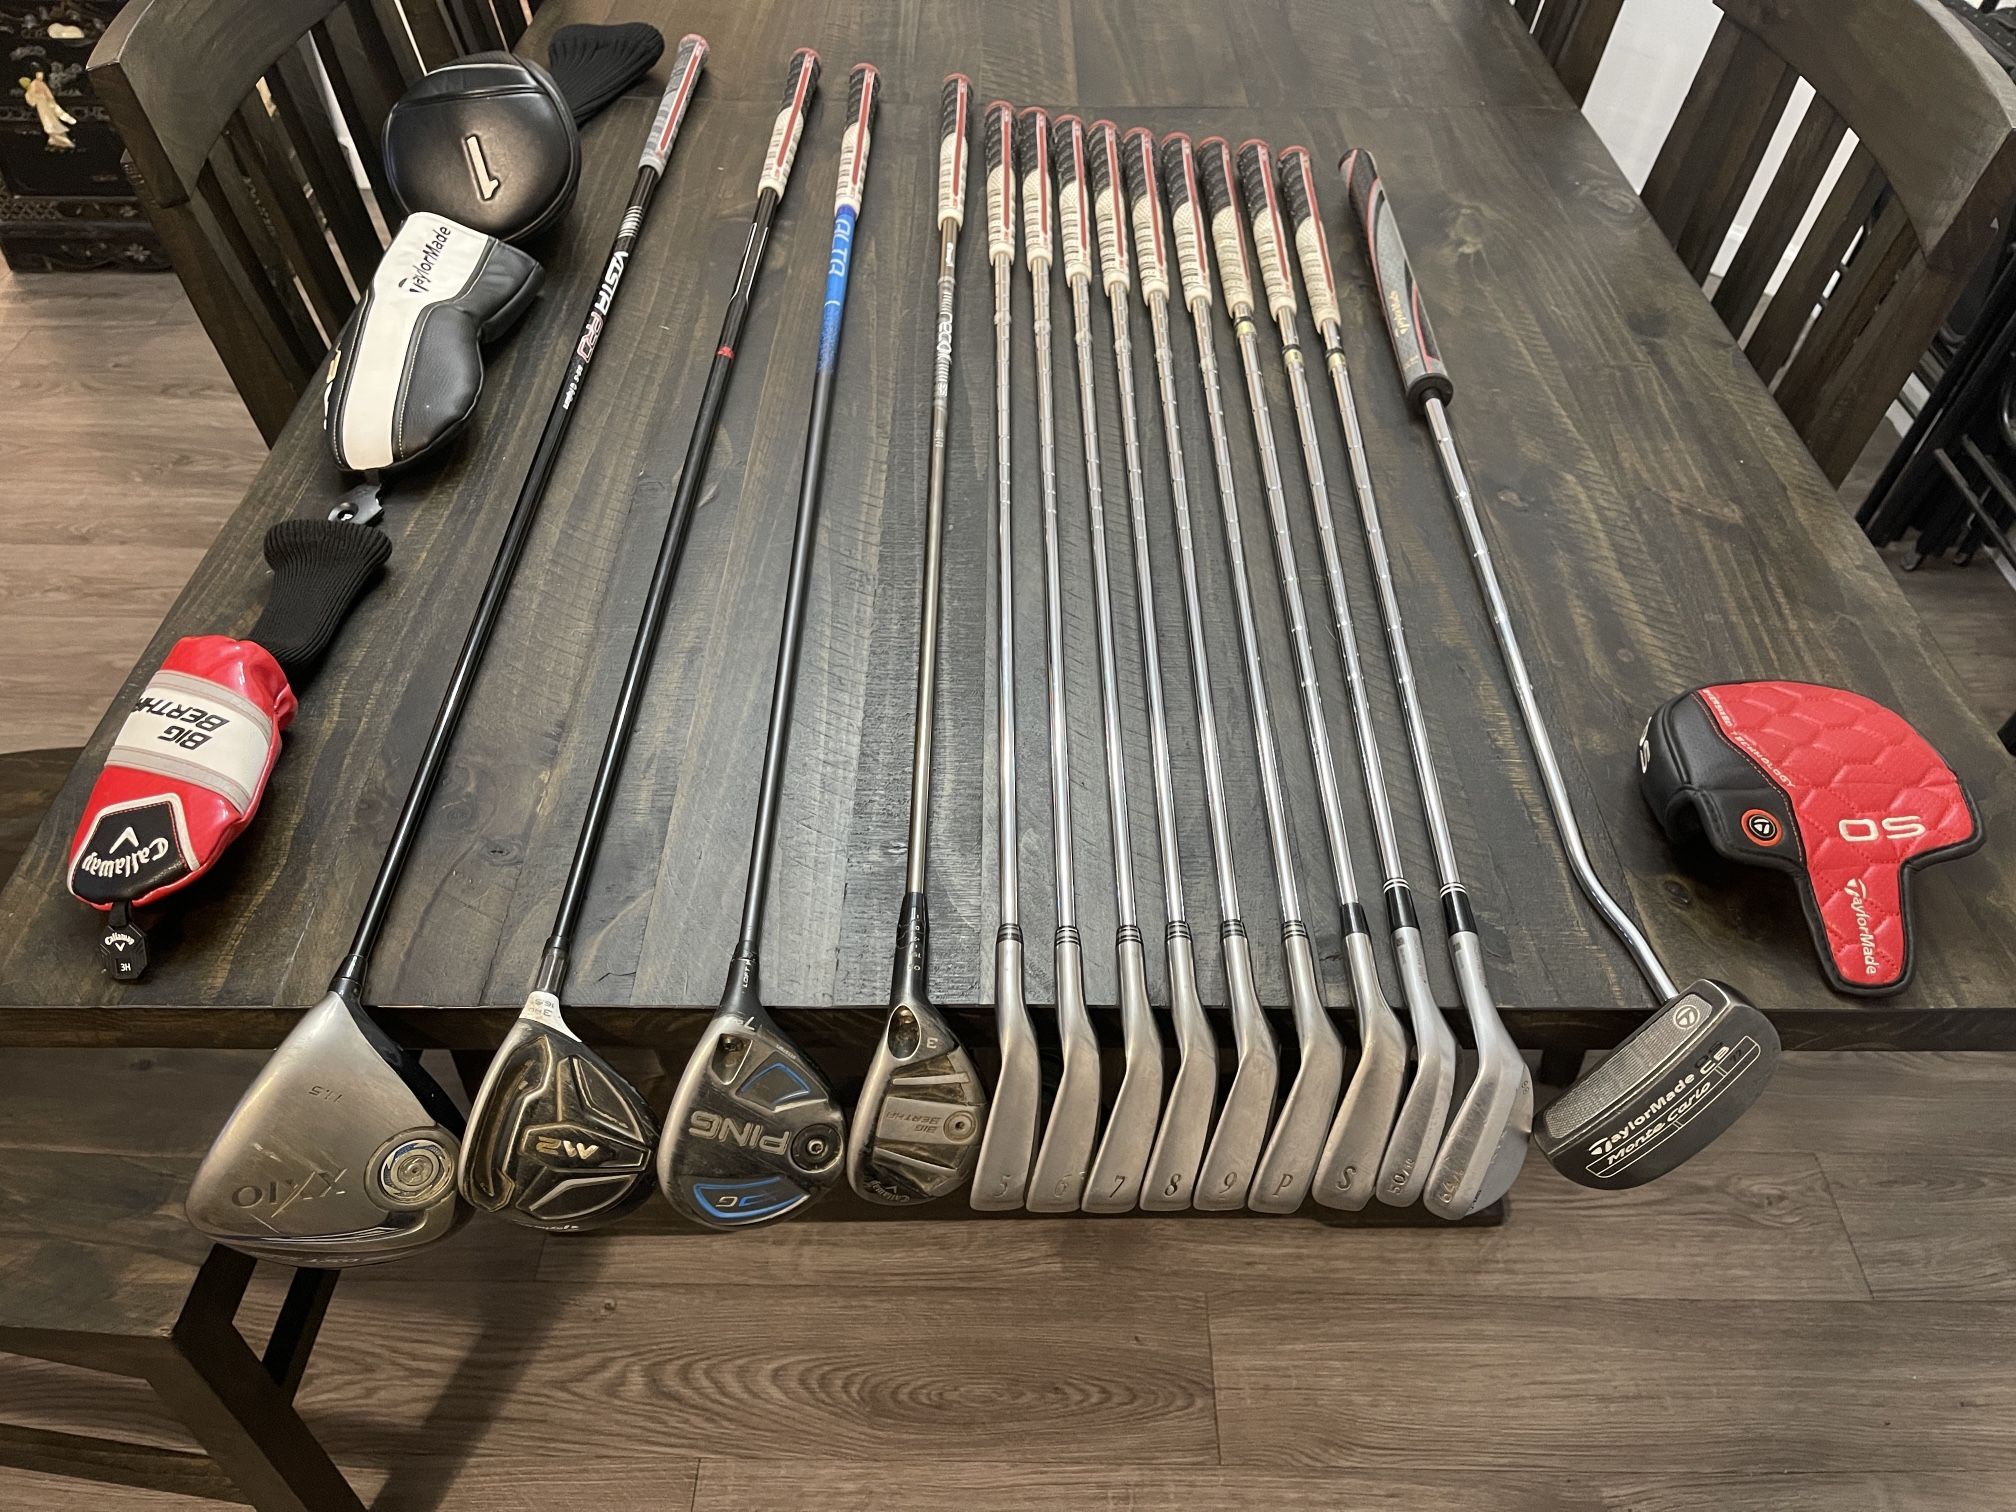 Full Bag of Used Men’s RH Golf Clubs